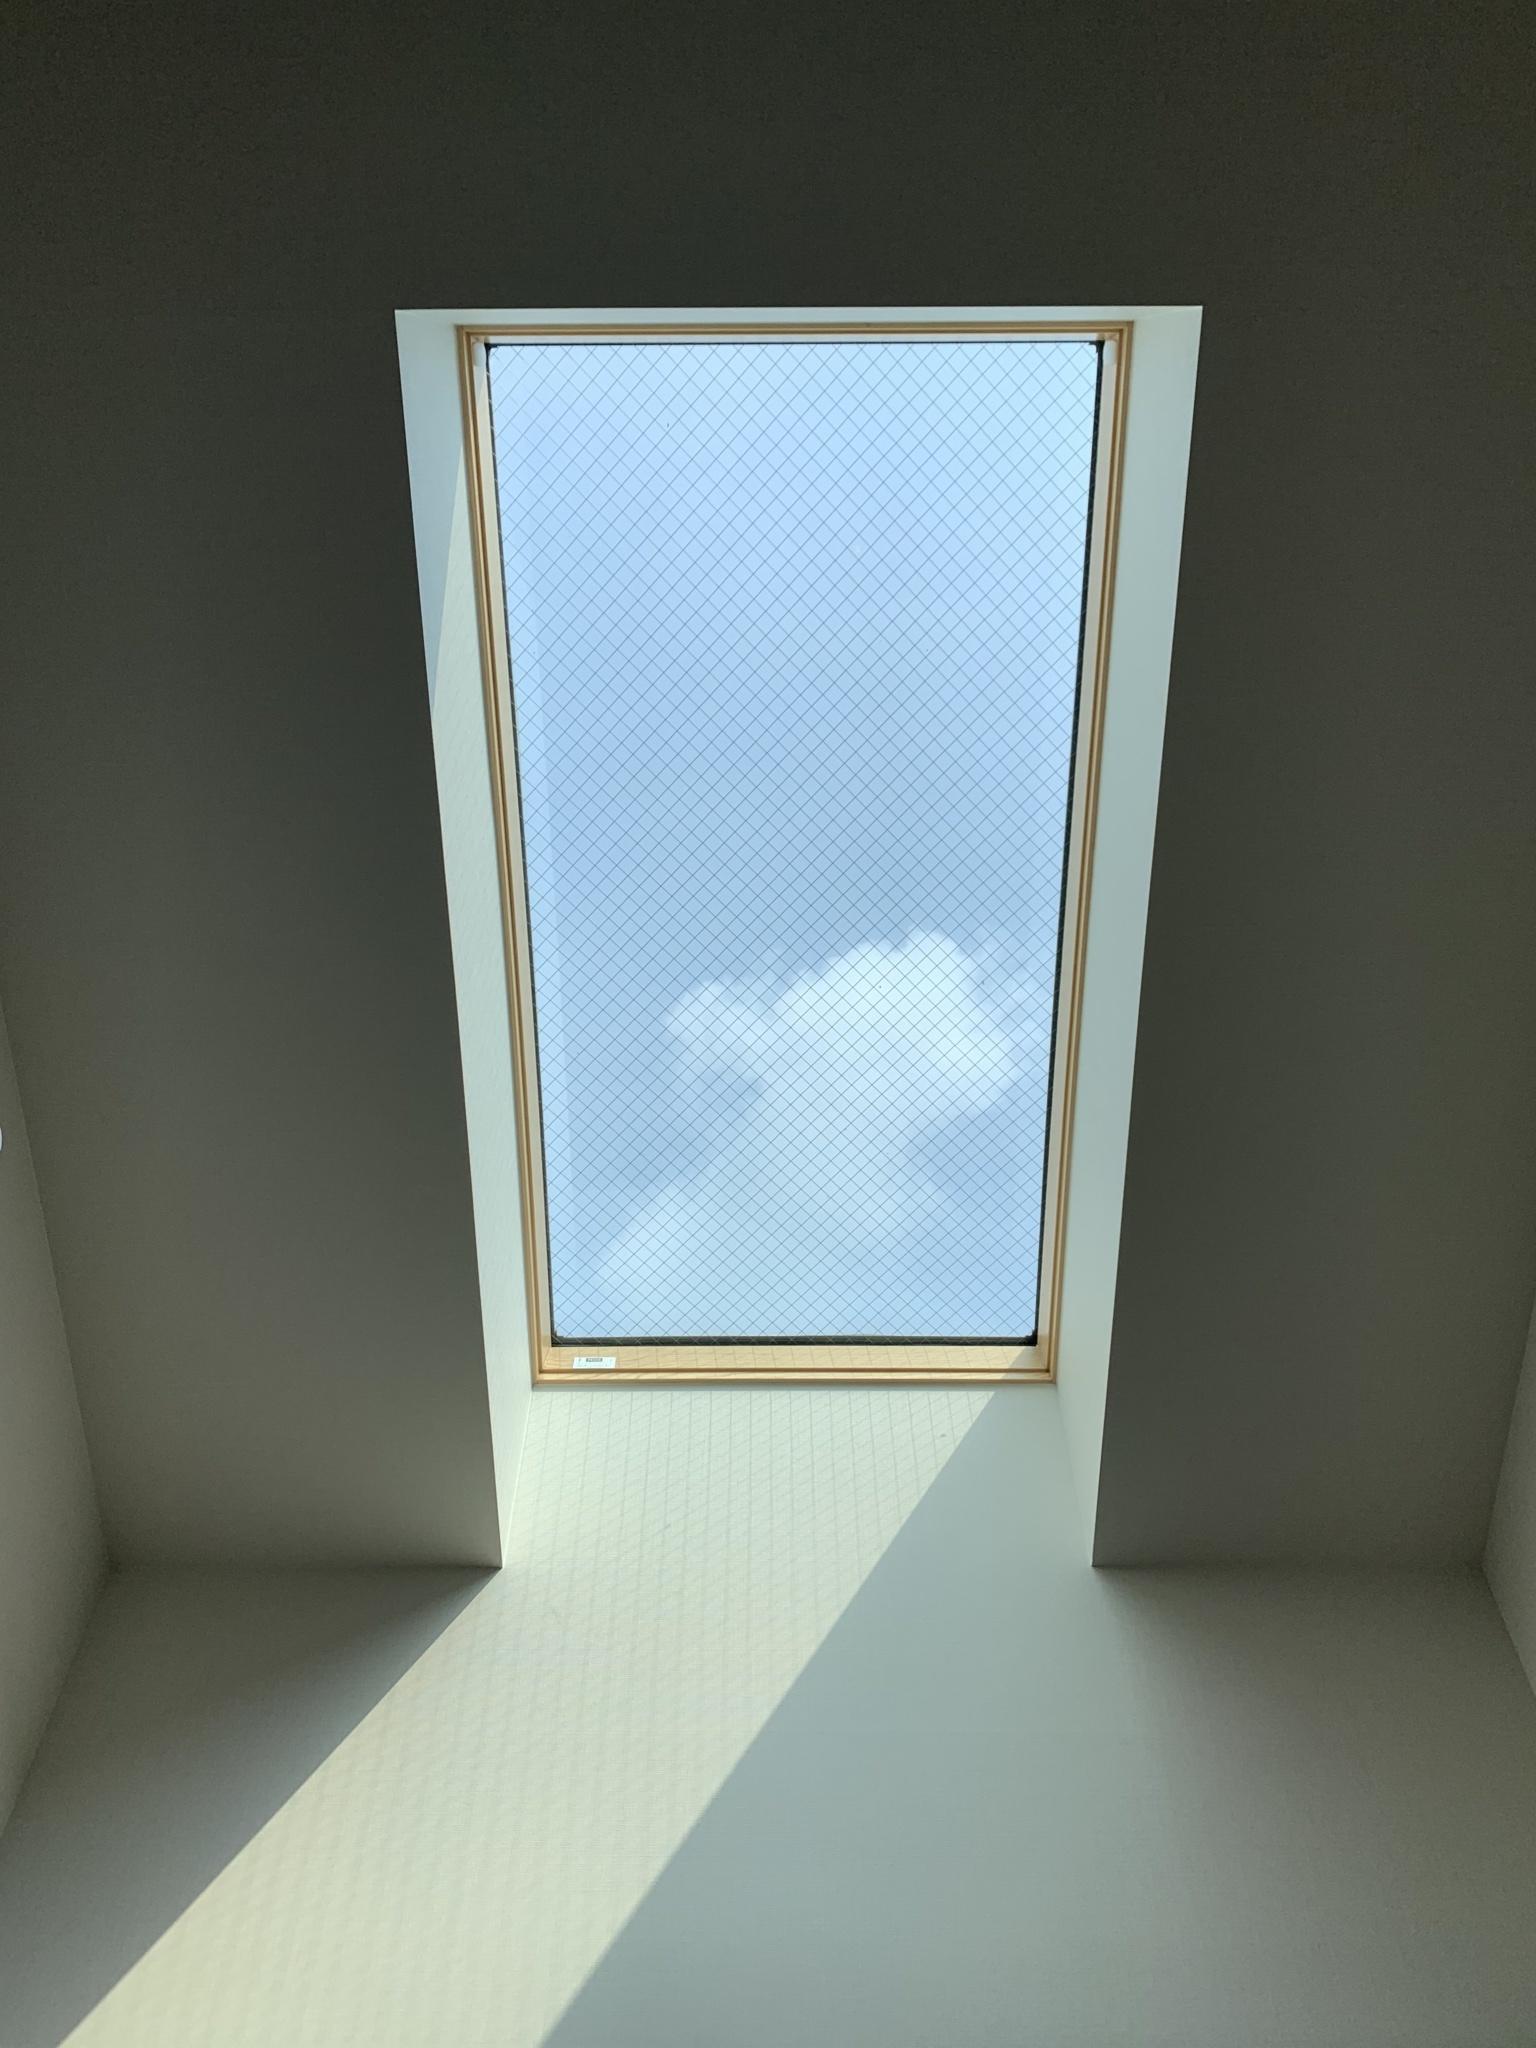 天窓の効果について書きます。天窓は普通の窓の3倍明るいのですが注意も必要です。